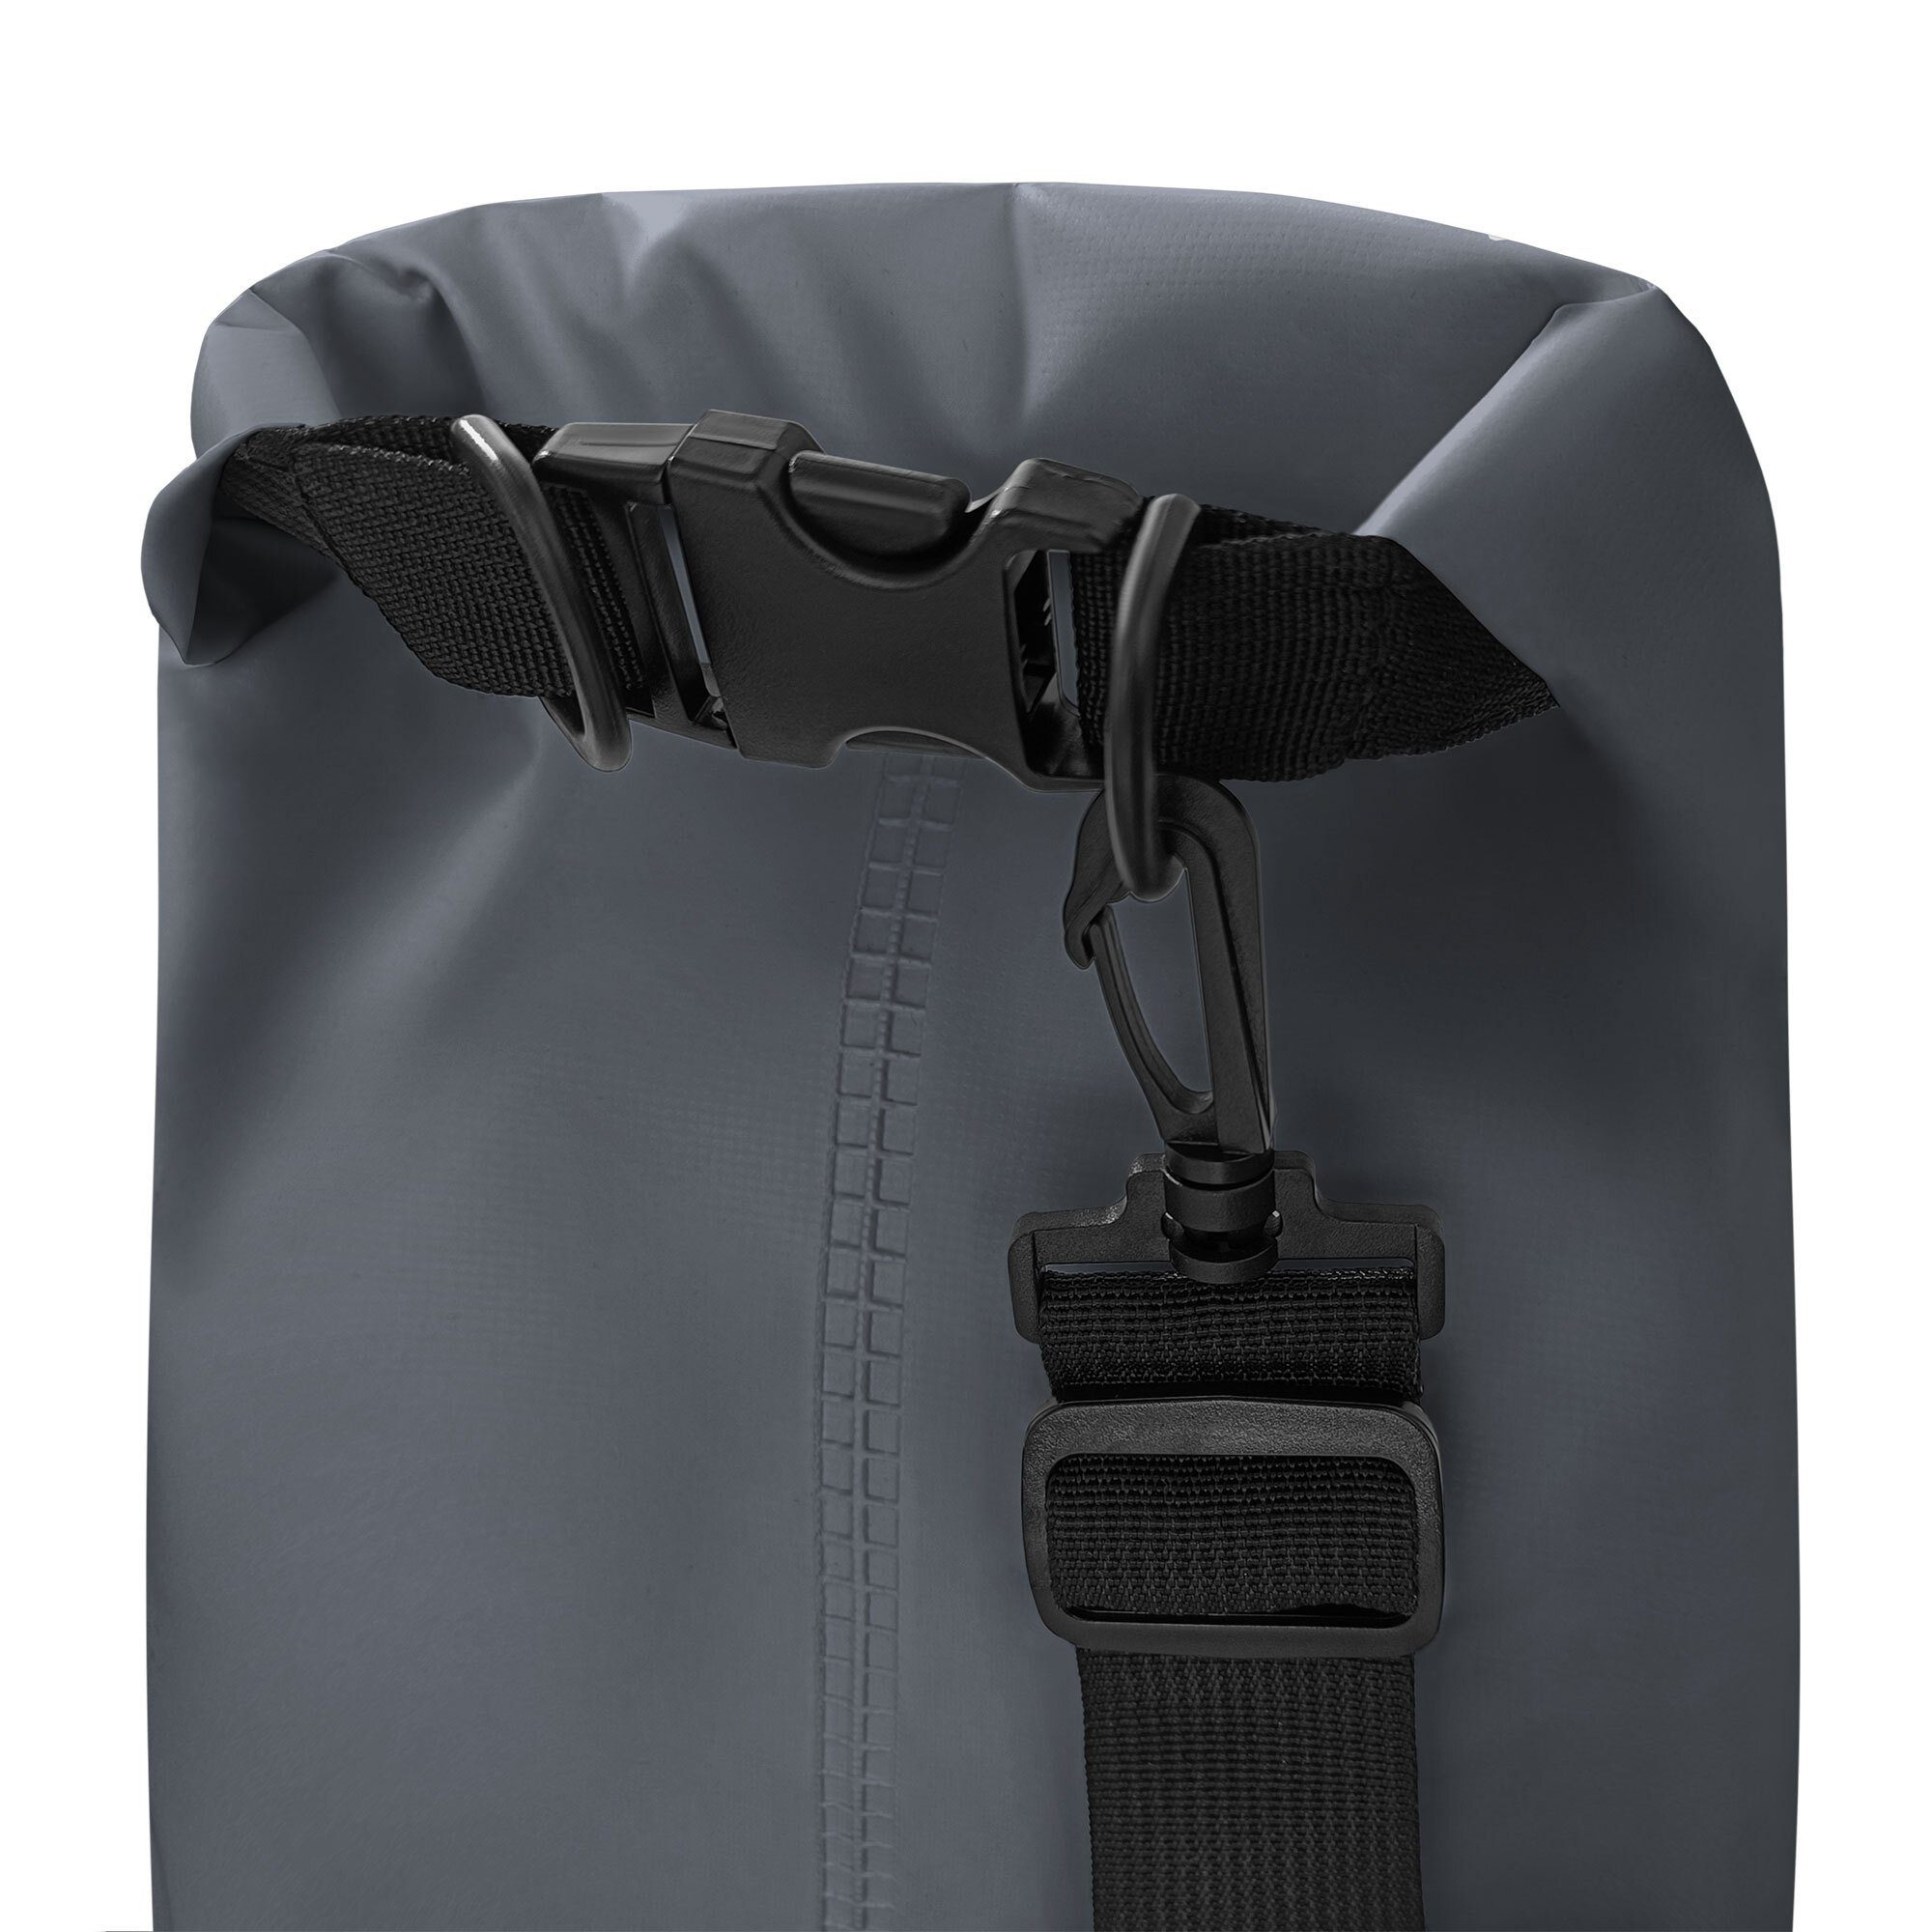 YEAZ Drybag ISAR schwarz wasserfester packsack 1,5l